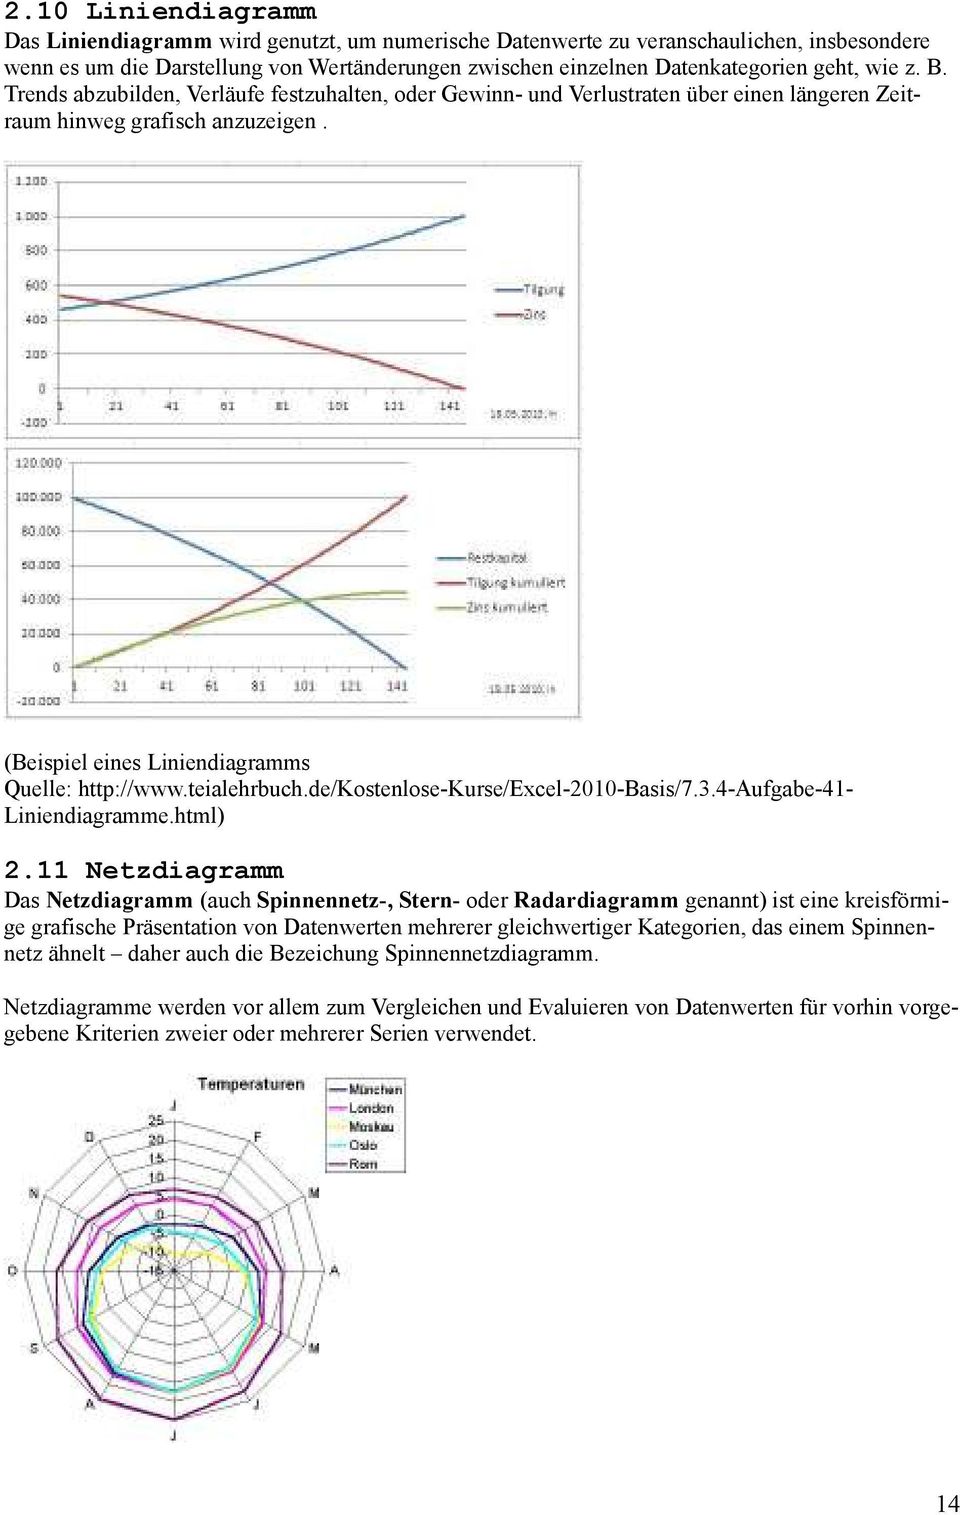 teialehrbuch.de/kostenlose-kurse/excel-2010-basis/7.3.4-aufgabe-41- Liniendiagramme.html) 2.